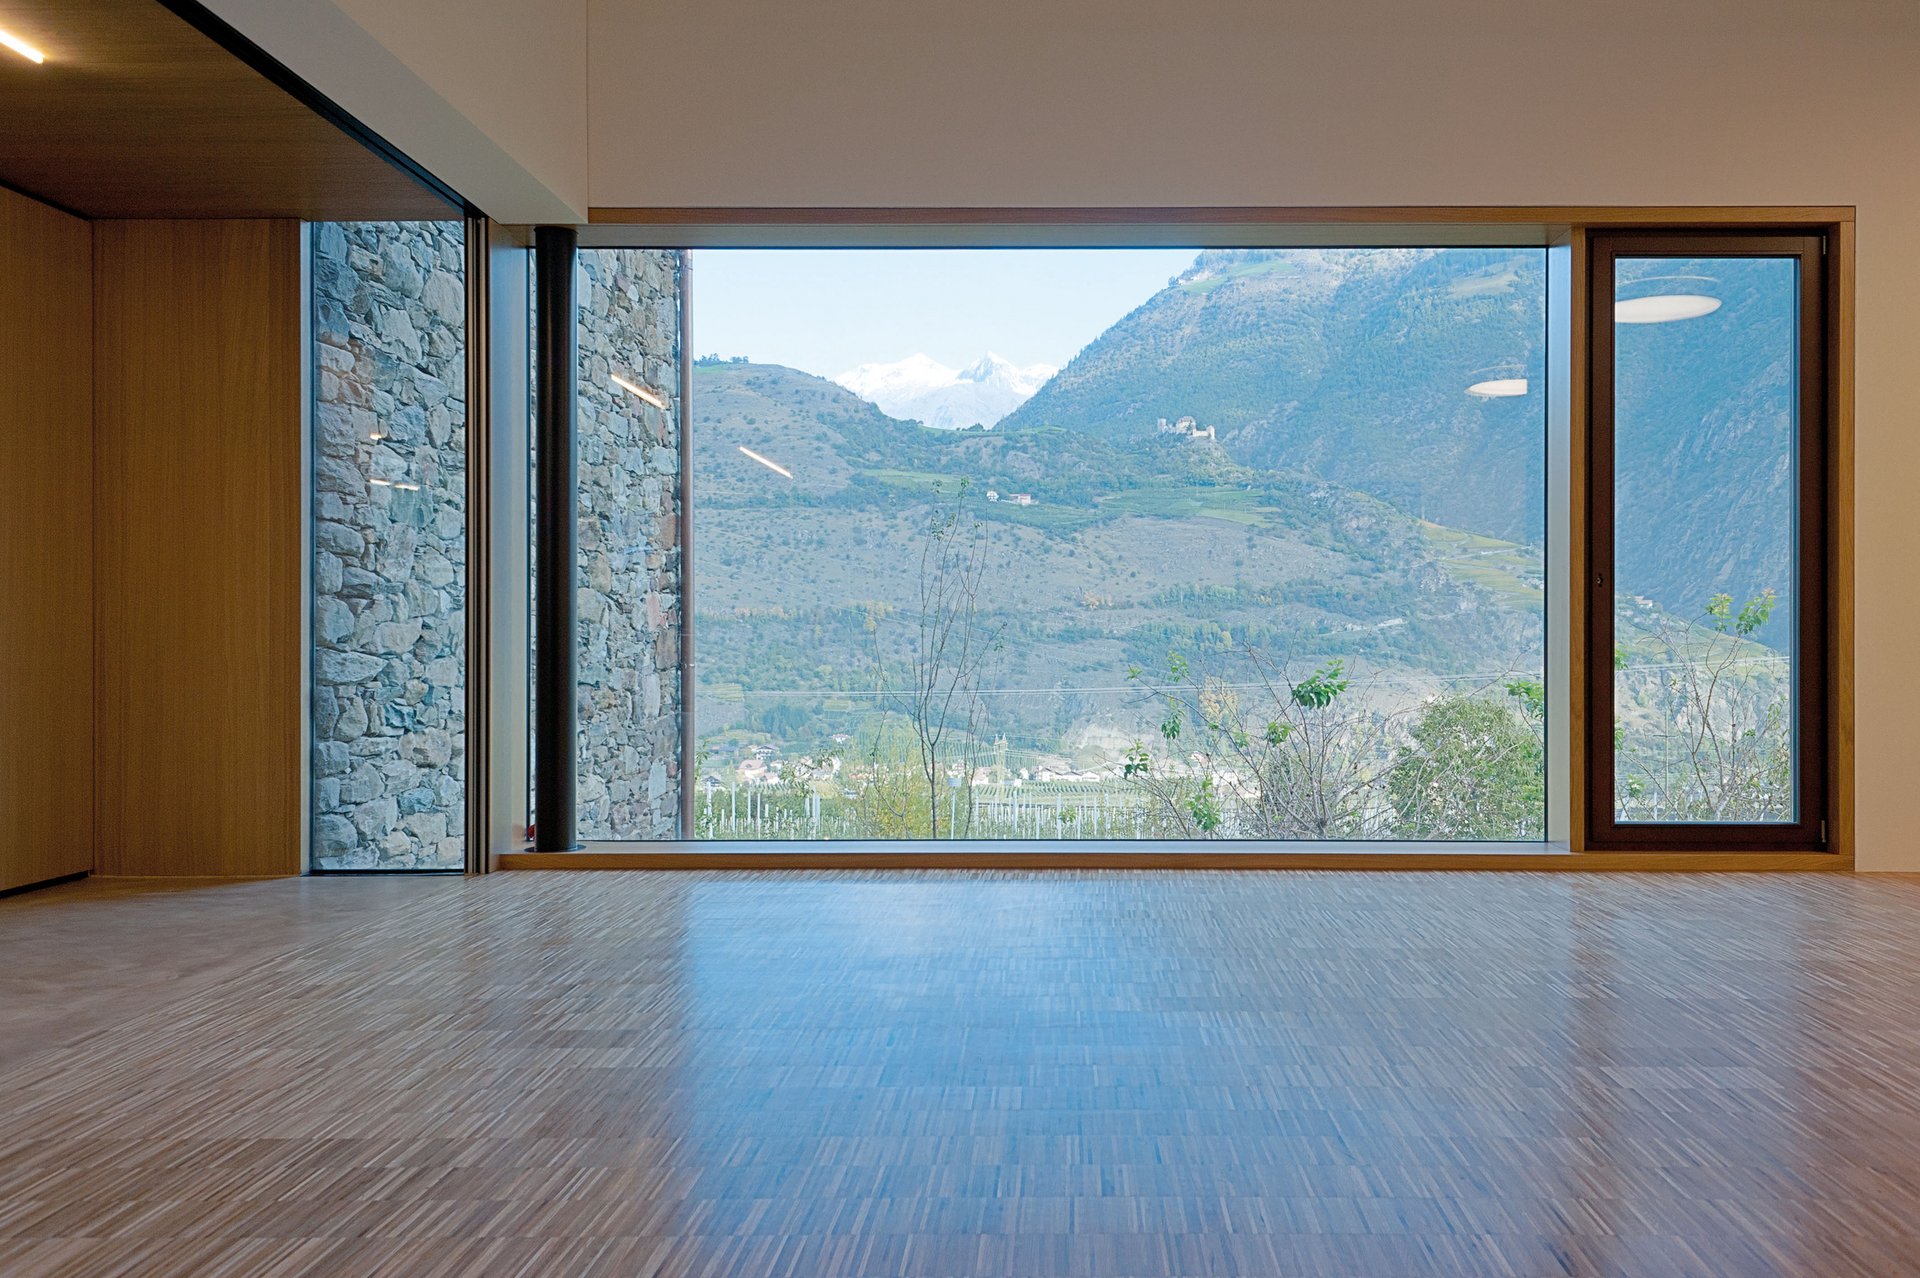 Gaulhofer Holz Aluminium Fenster bieten Stbilität, Energieeffizienz und Asthetik.